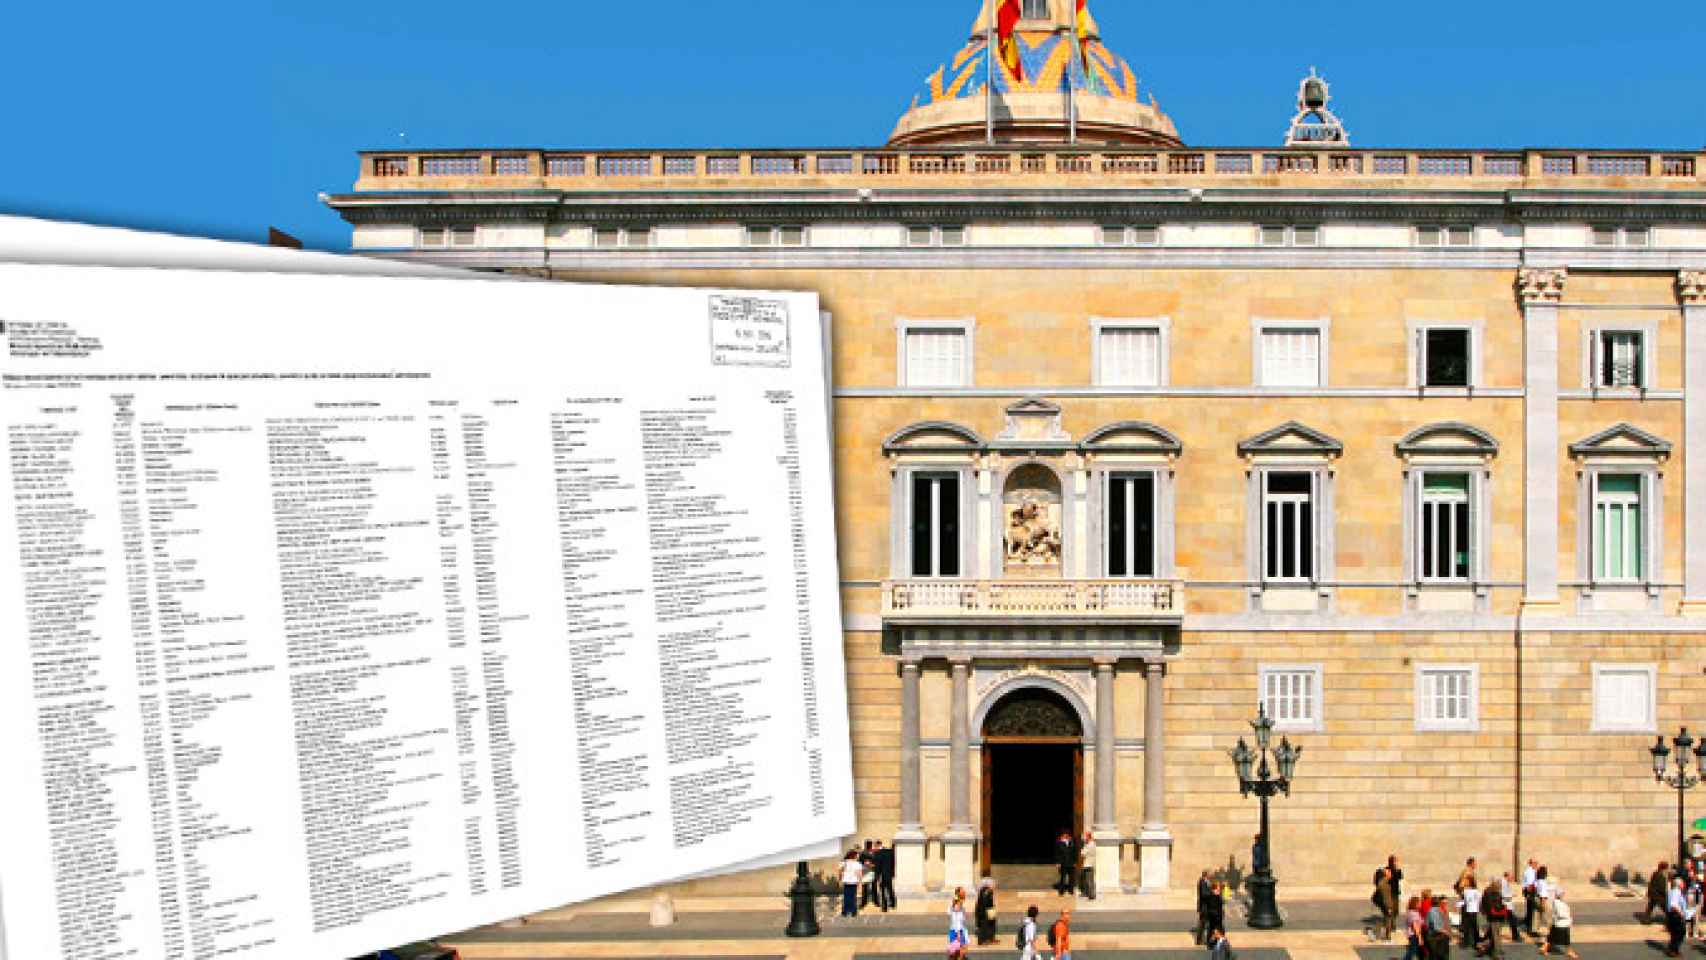 Un total de 136 altos cargos han sido recolocados tras el cambio de gobierno en la Generalitat / CG